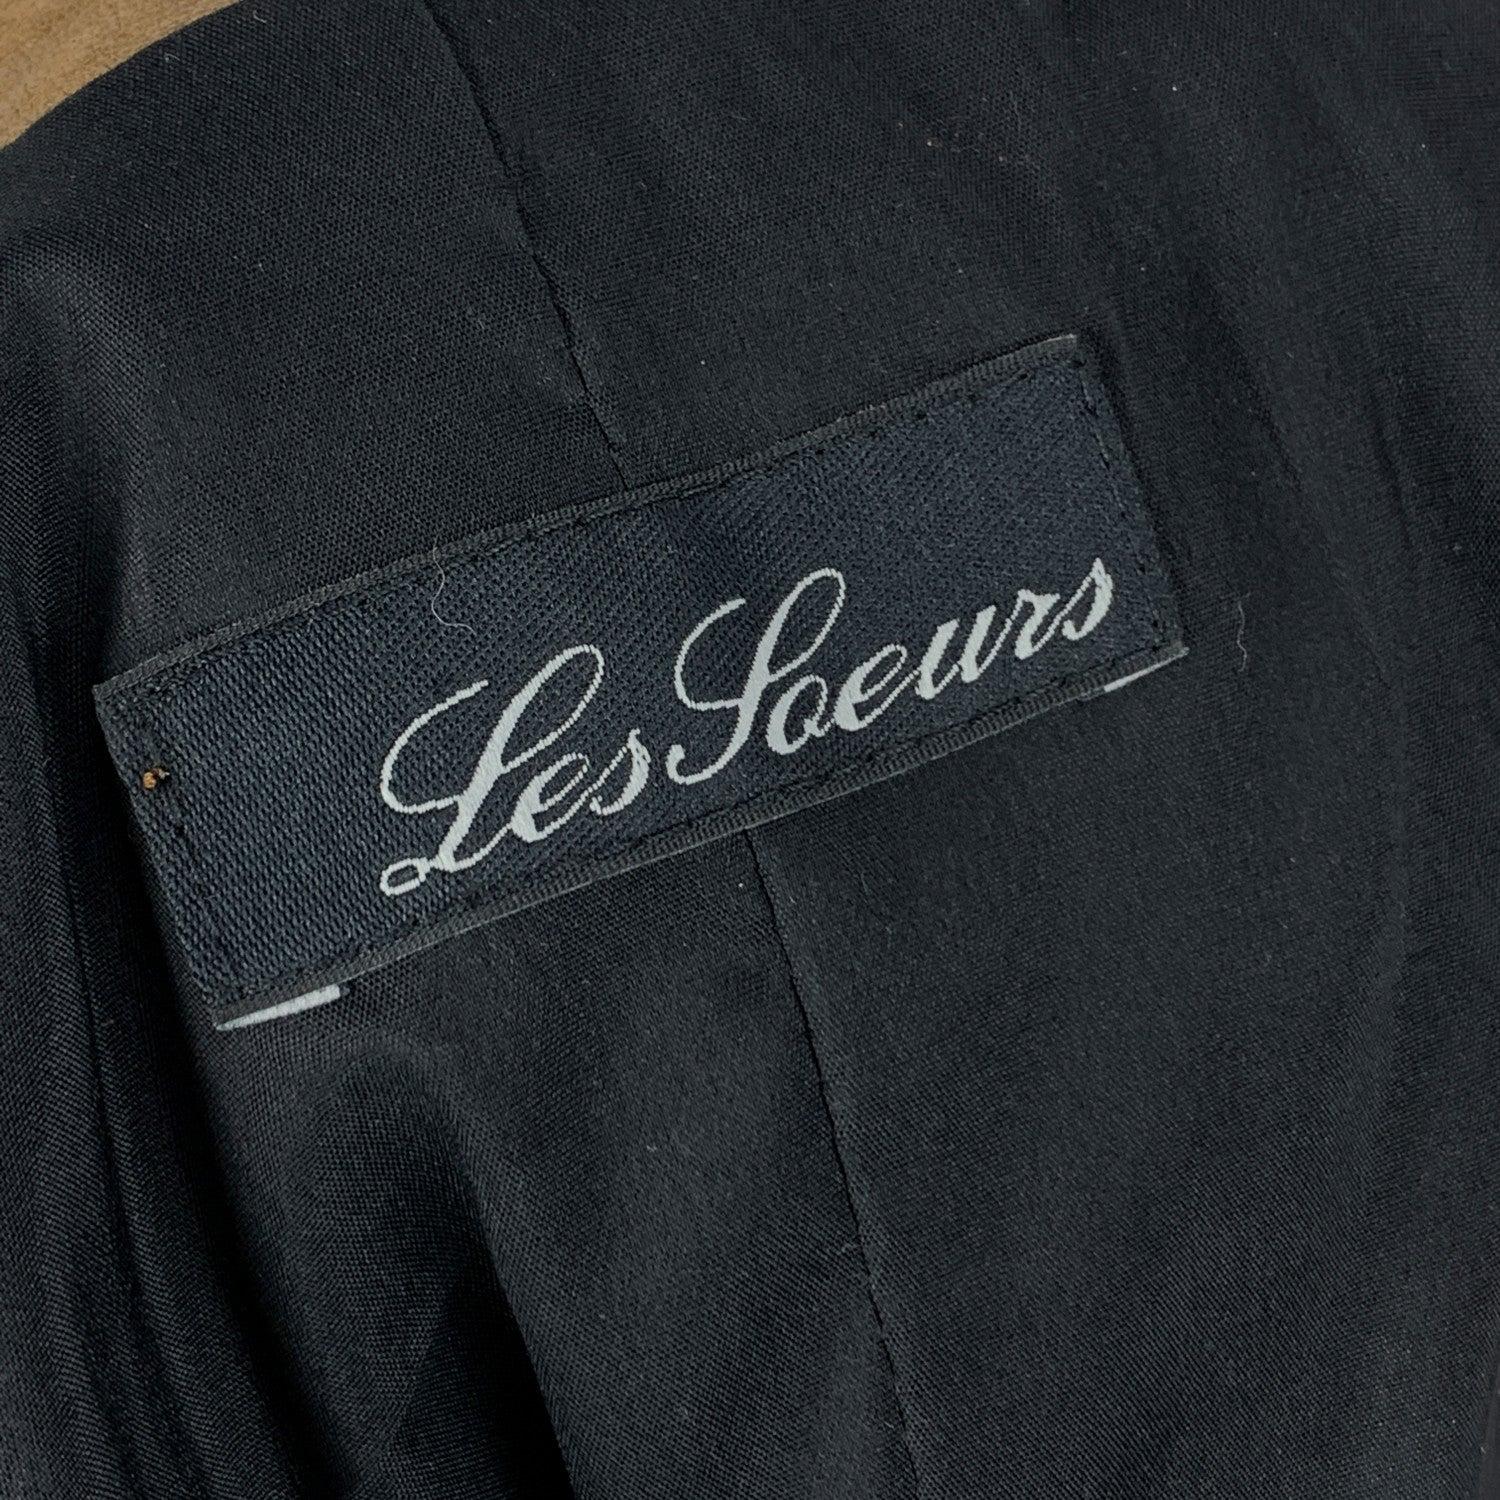 Women's Les Soeurs Brown Leather Vest Multi Zip Sleeveless Jacket Size 42 IT